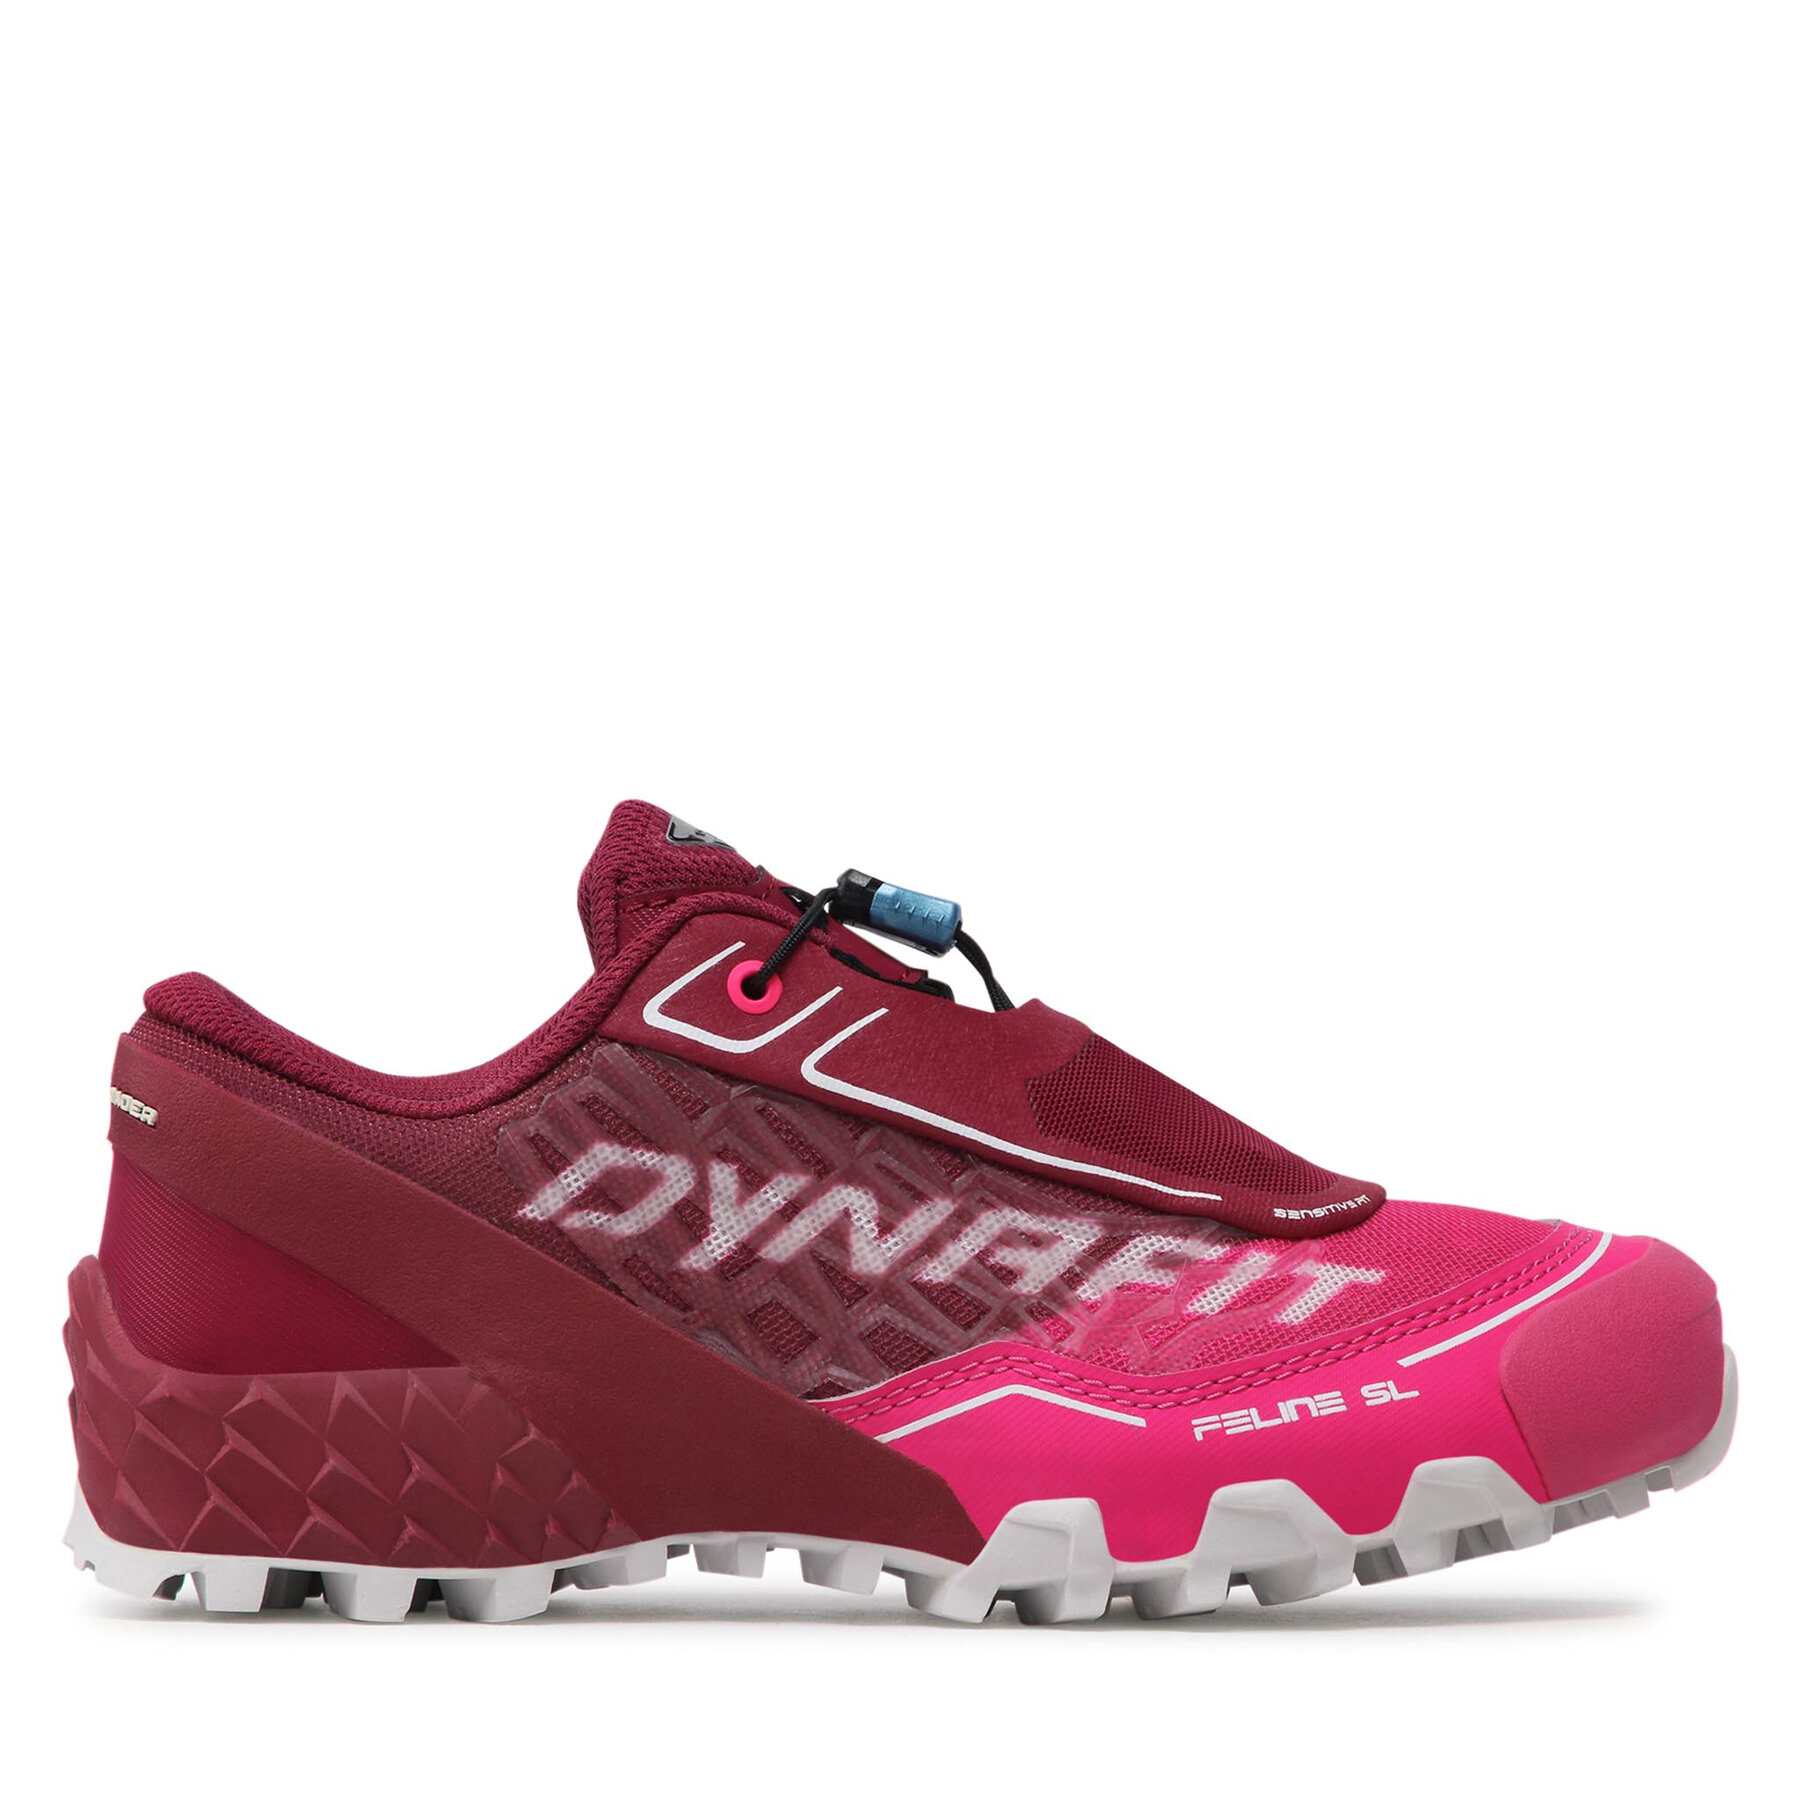 DYNAFIT FELINE SL - Zapatos